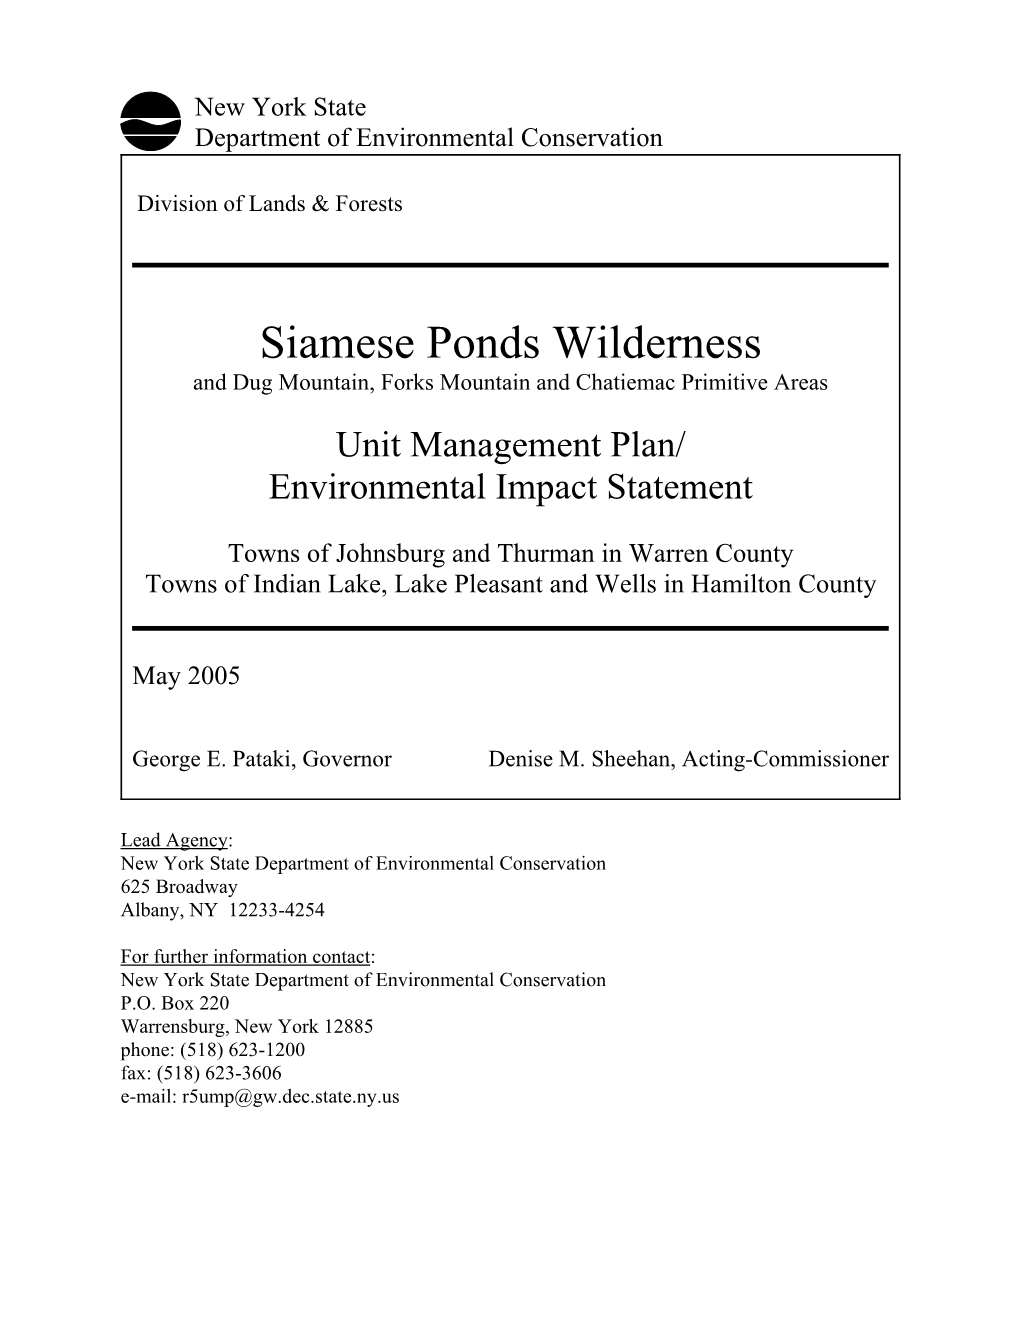 2005 Siamese Ponds Wilderness Unit Management Plan (UMP)